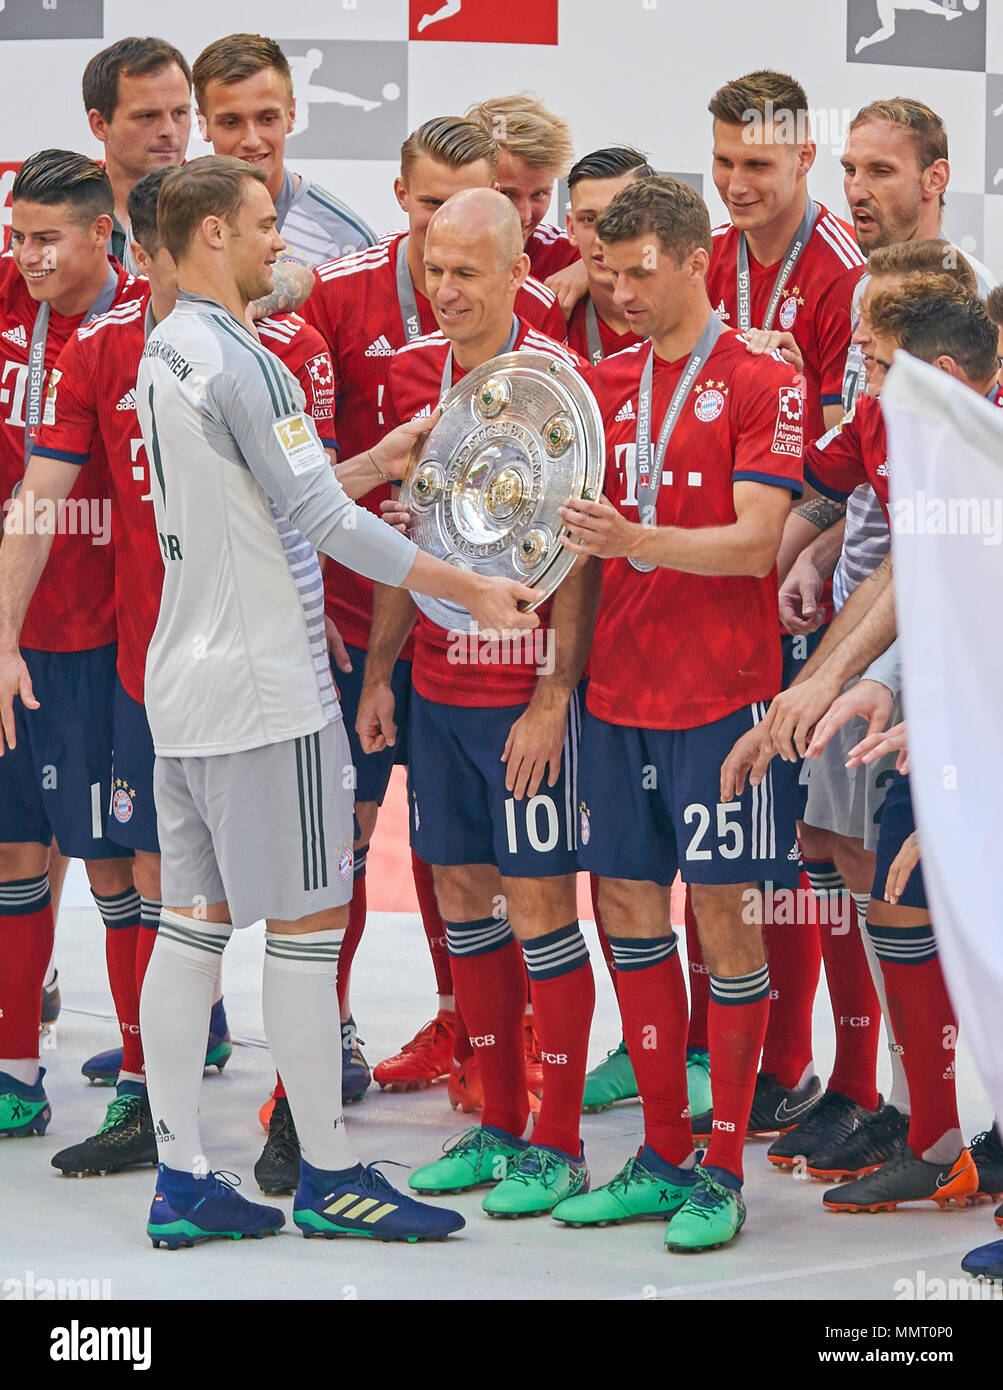 Monaco di Baviera, Germania. Il 12 maggio 2018. FC Bayern Munich Soccer,  Monaco, 12 maggio 2018 Thomas MUELLER, Müller, FCB 25 ottiene trofeo di  Manuel NEUER, FCB 1 , nuova maglia 2018/2019